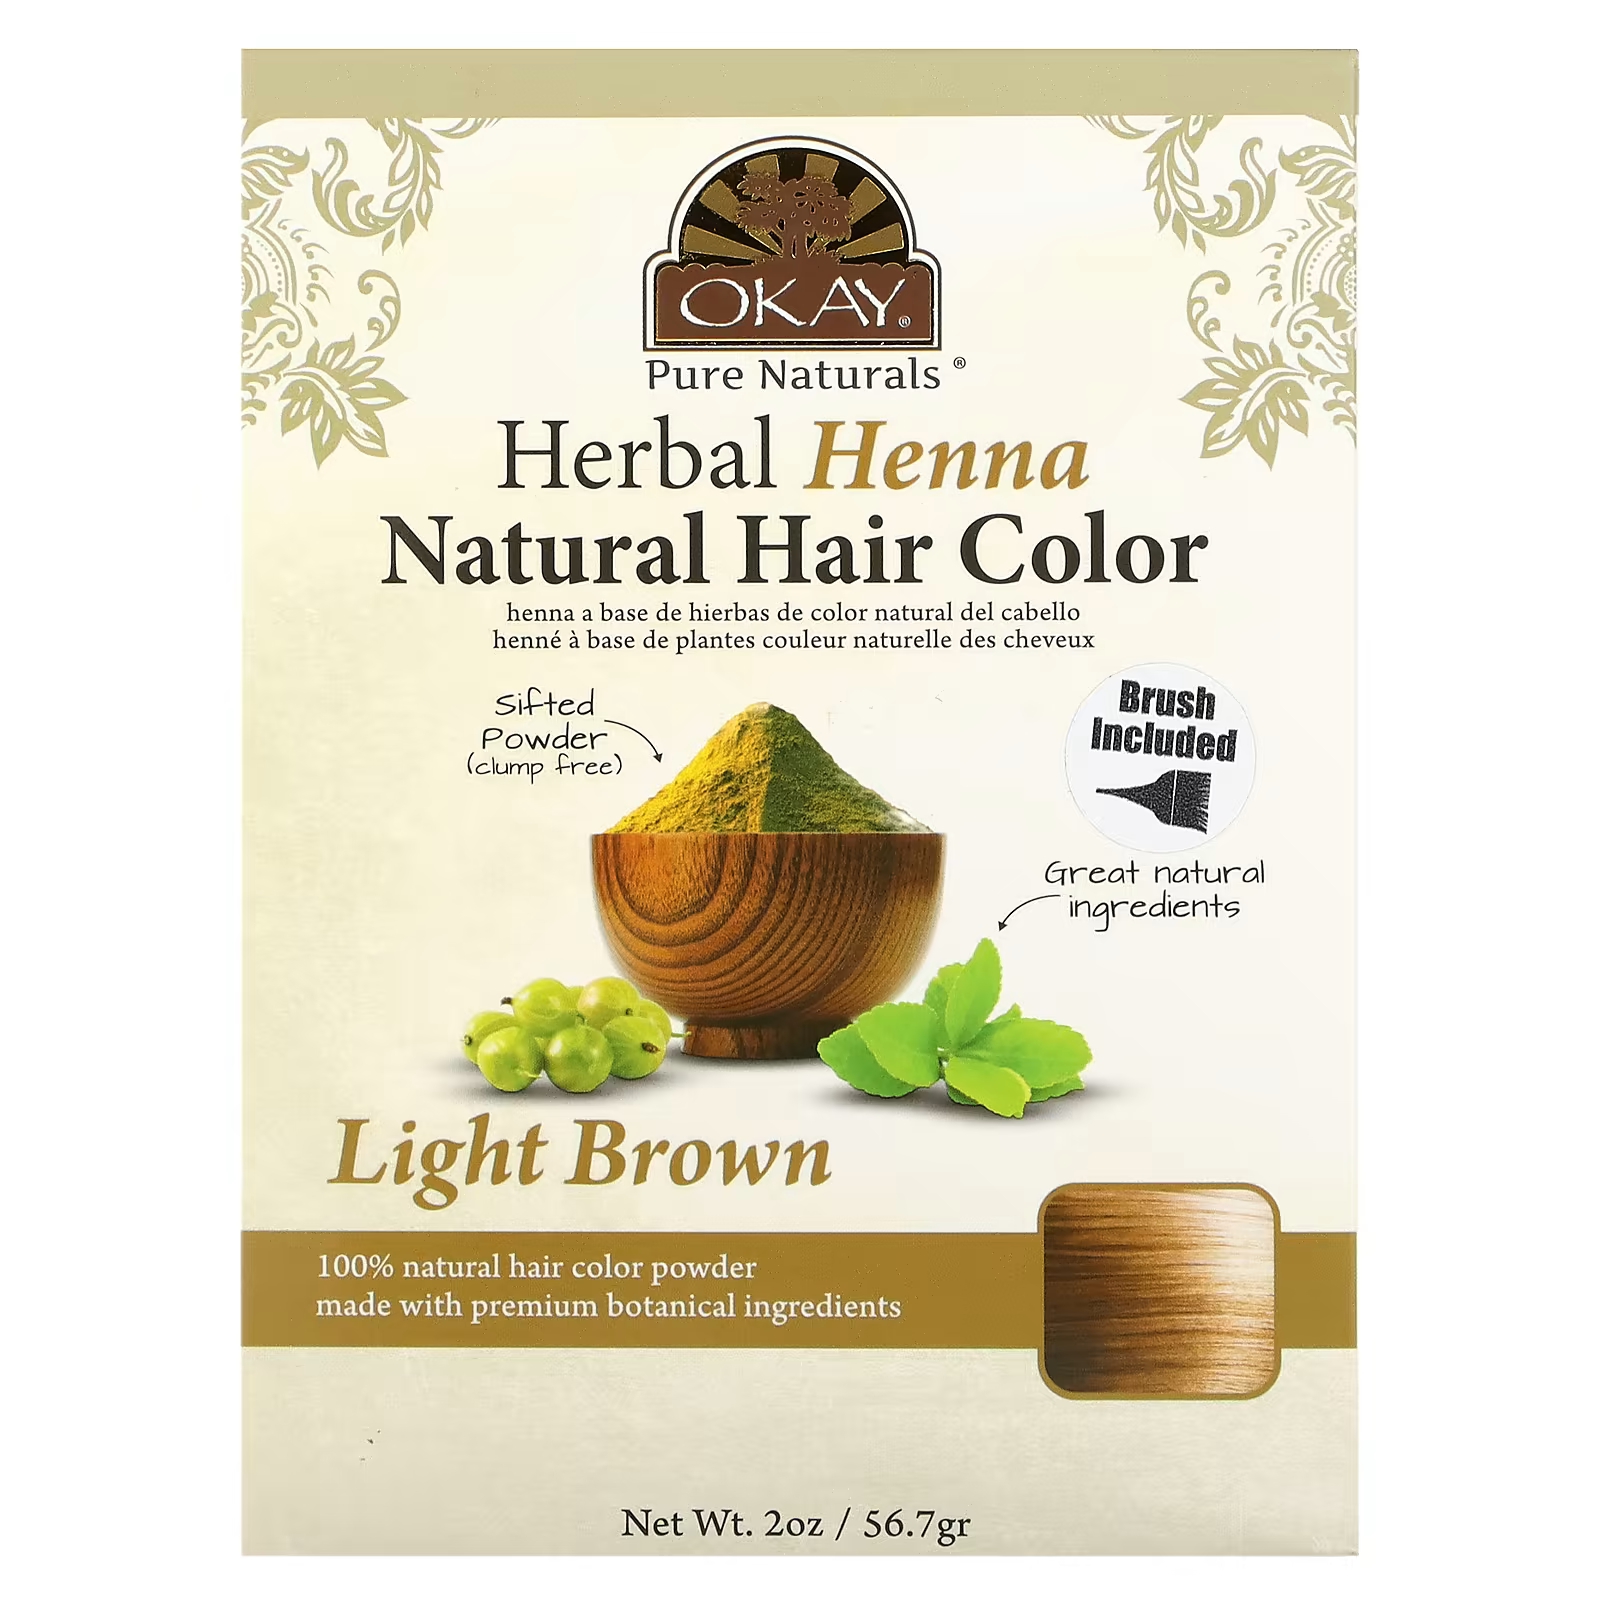 Краска для волос Okay Pure Naturals с травяной хной, светло-коричневый хорошо pure naturals хна стойкая краска для волос коричневый 2 унции 56 7 г okay pure naturals